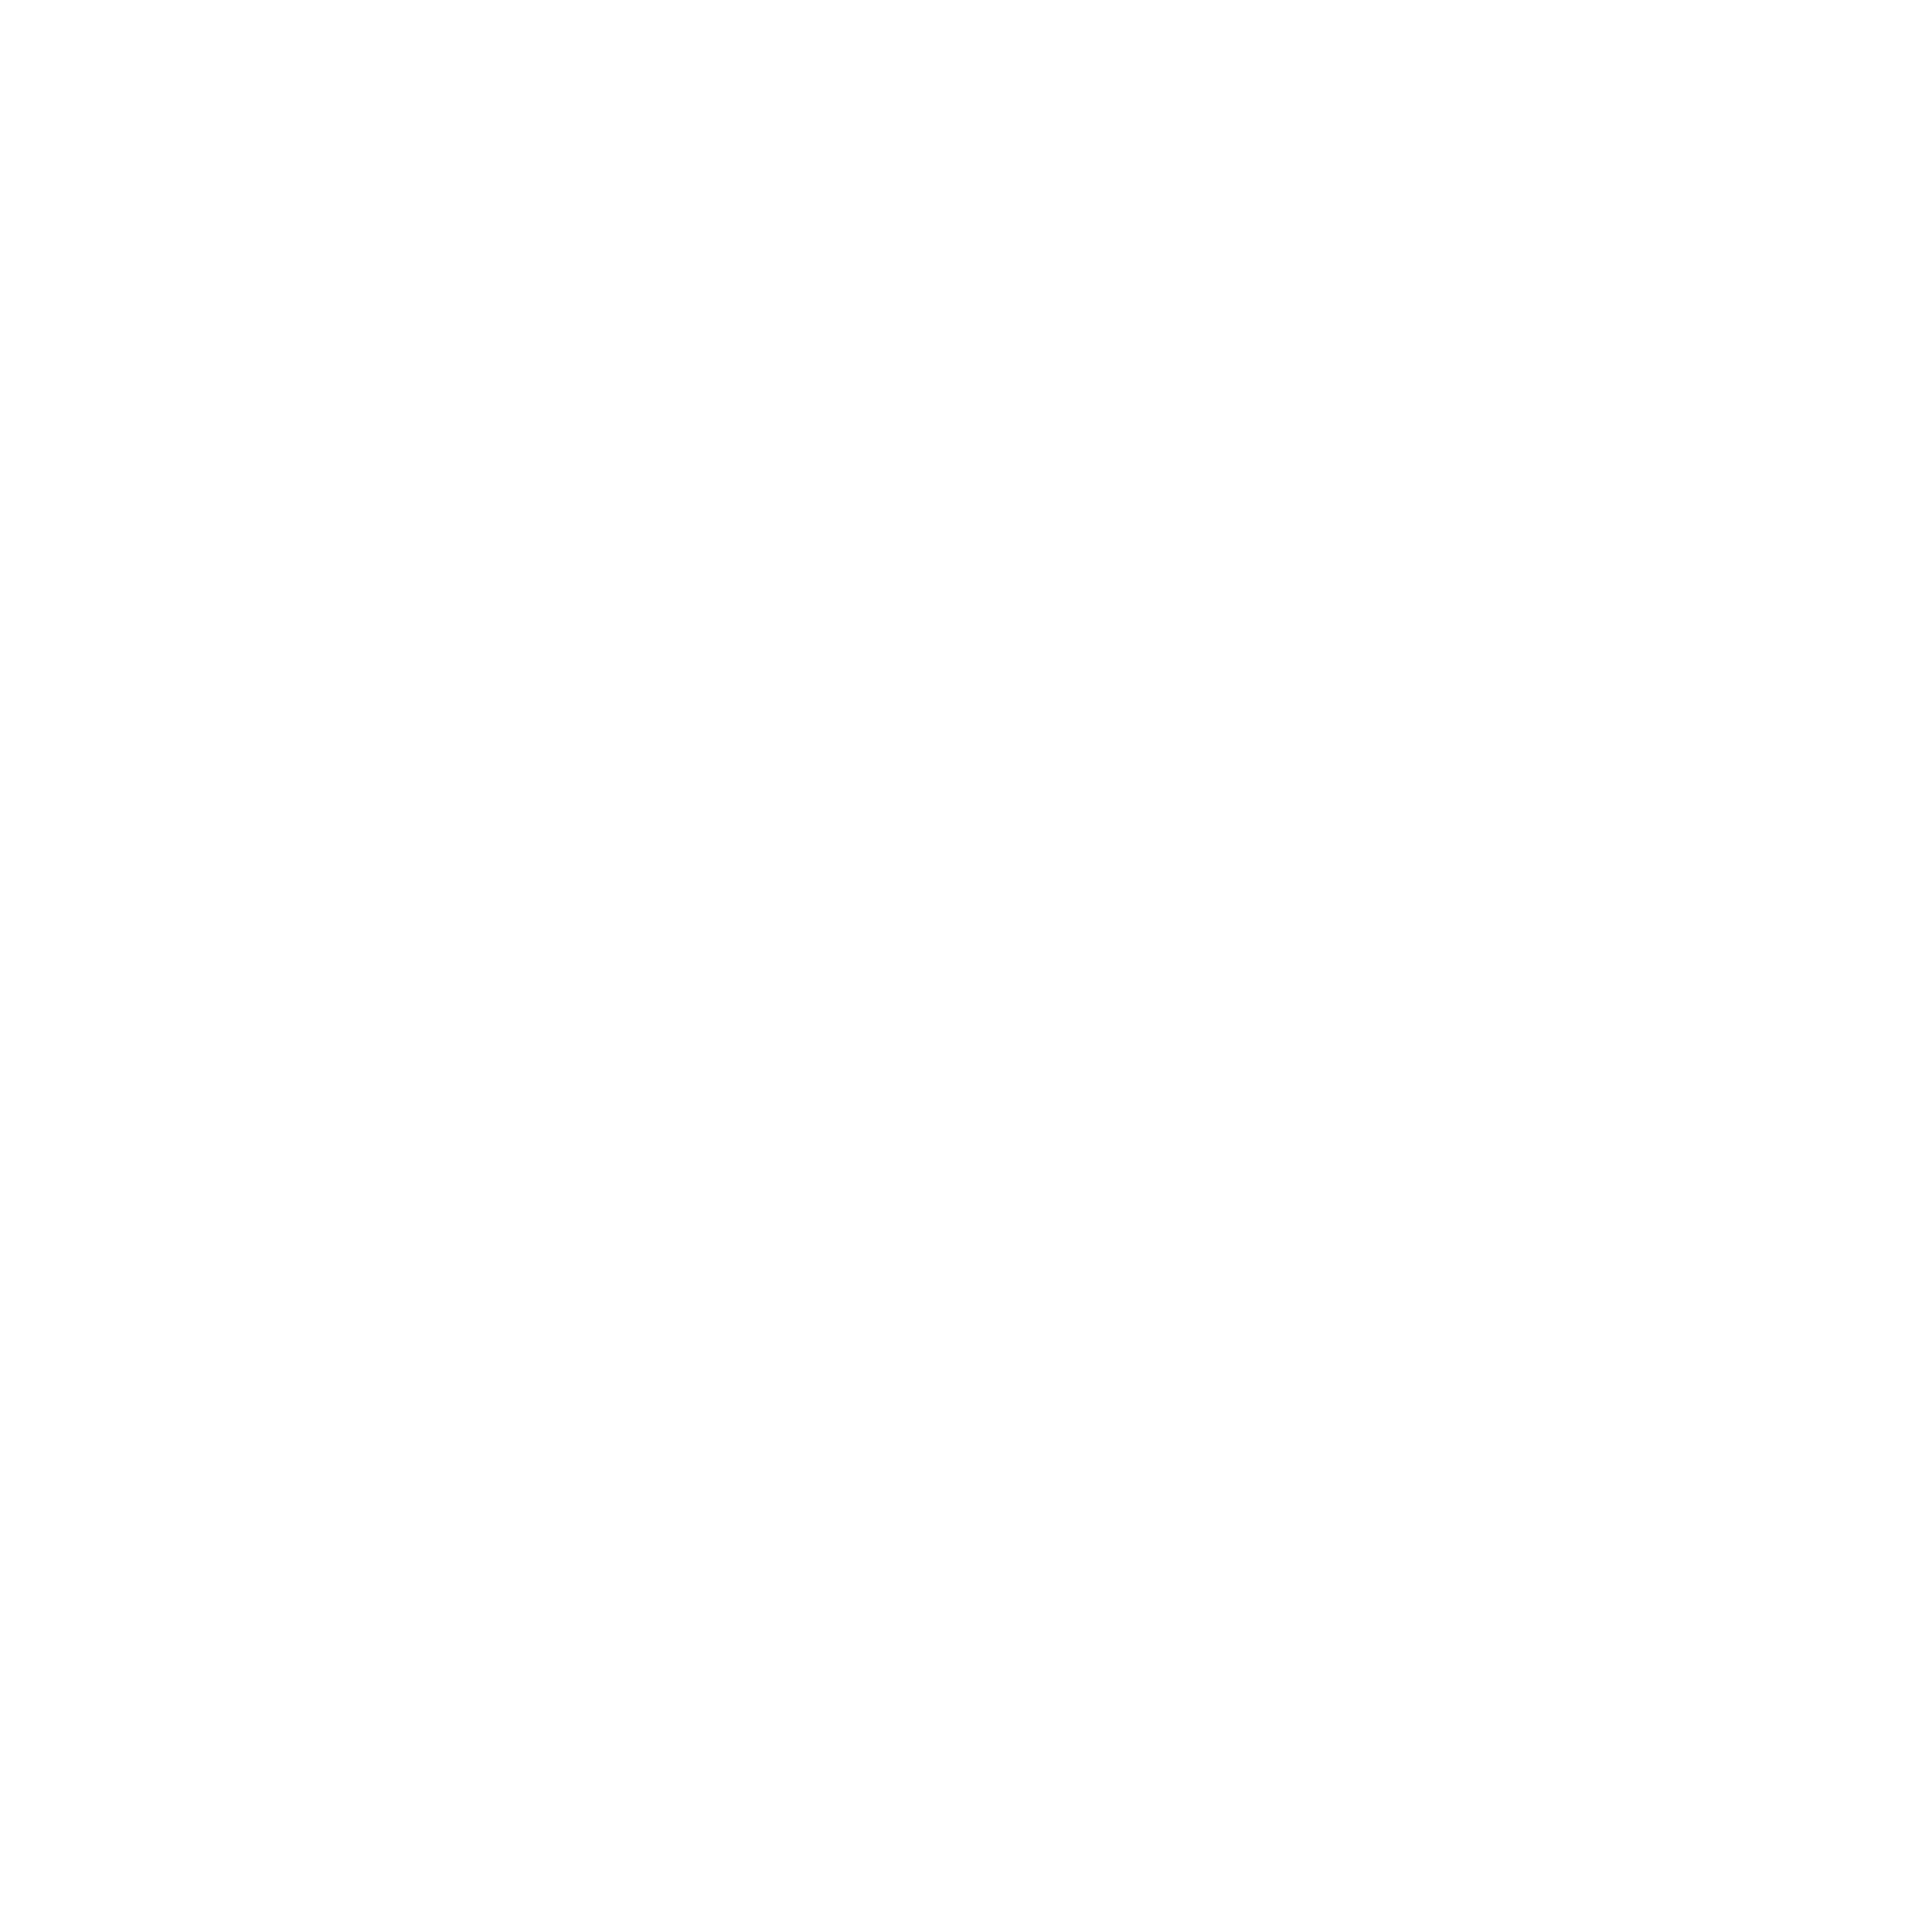 PURO DESIGN STUDIO